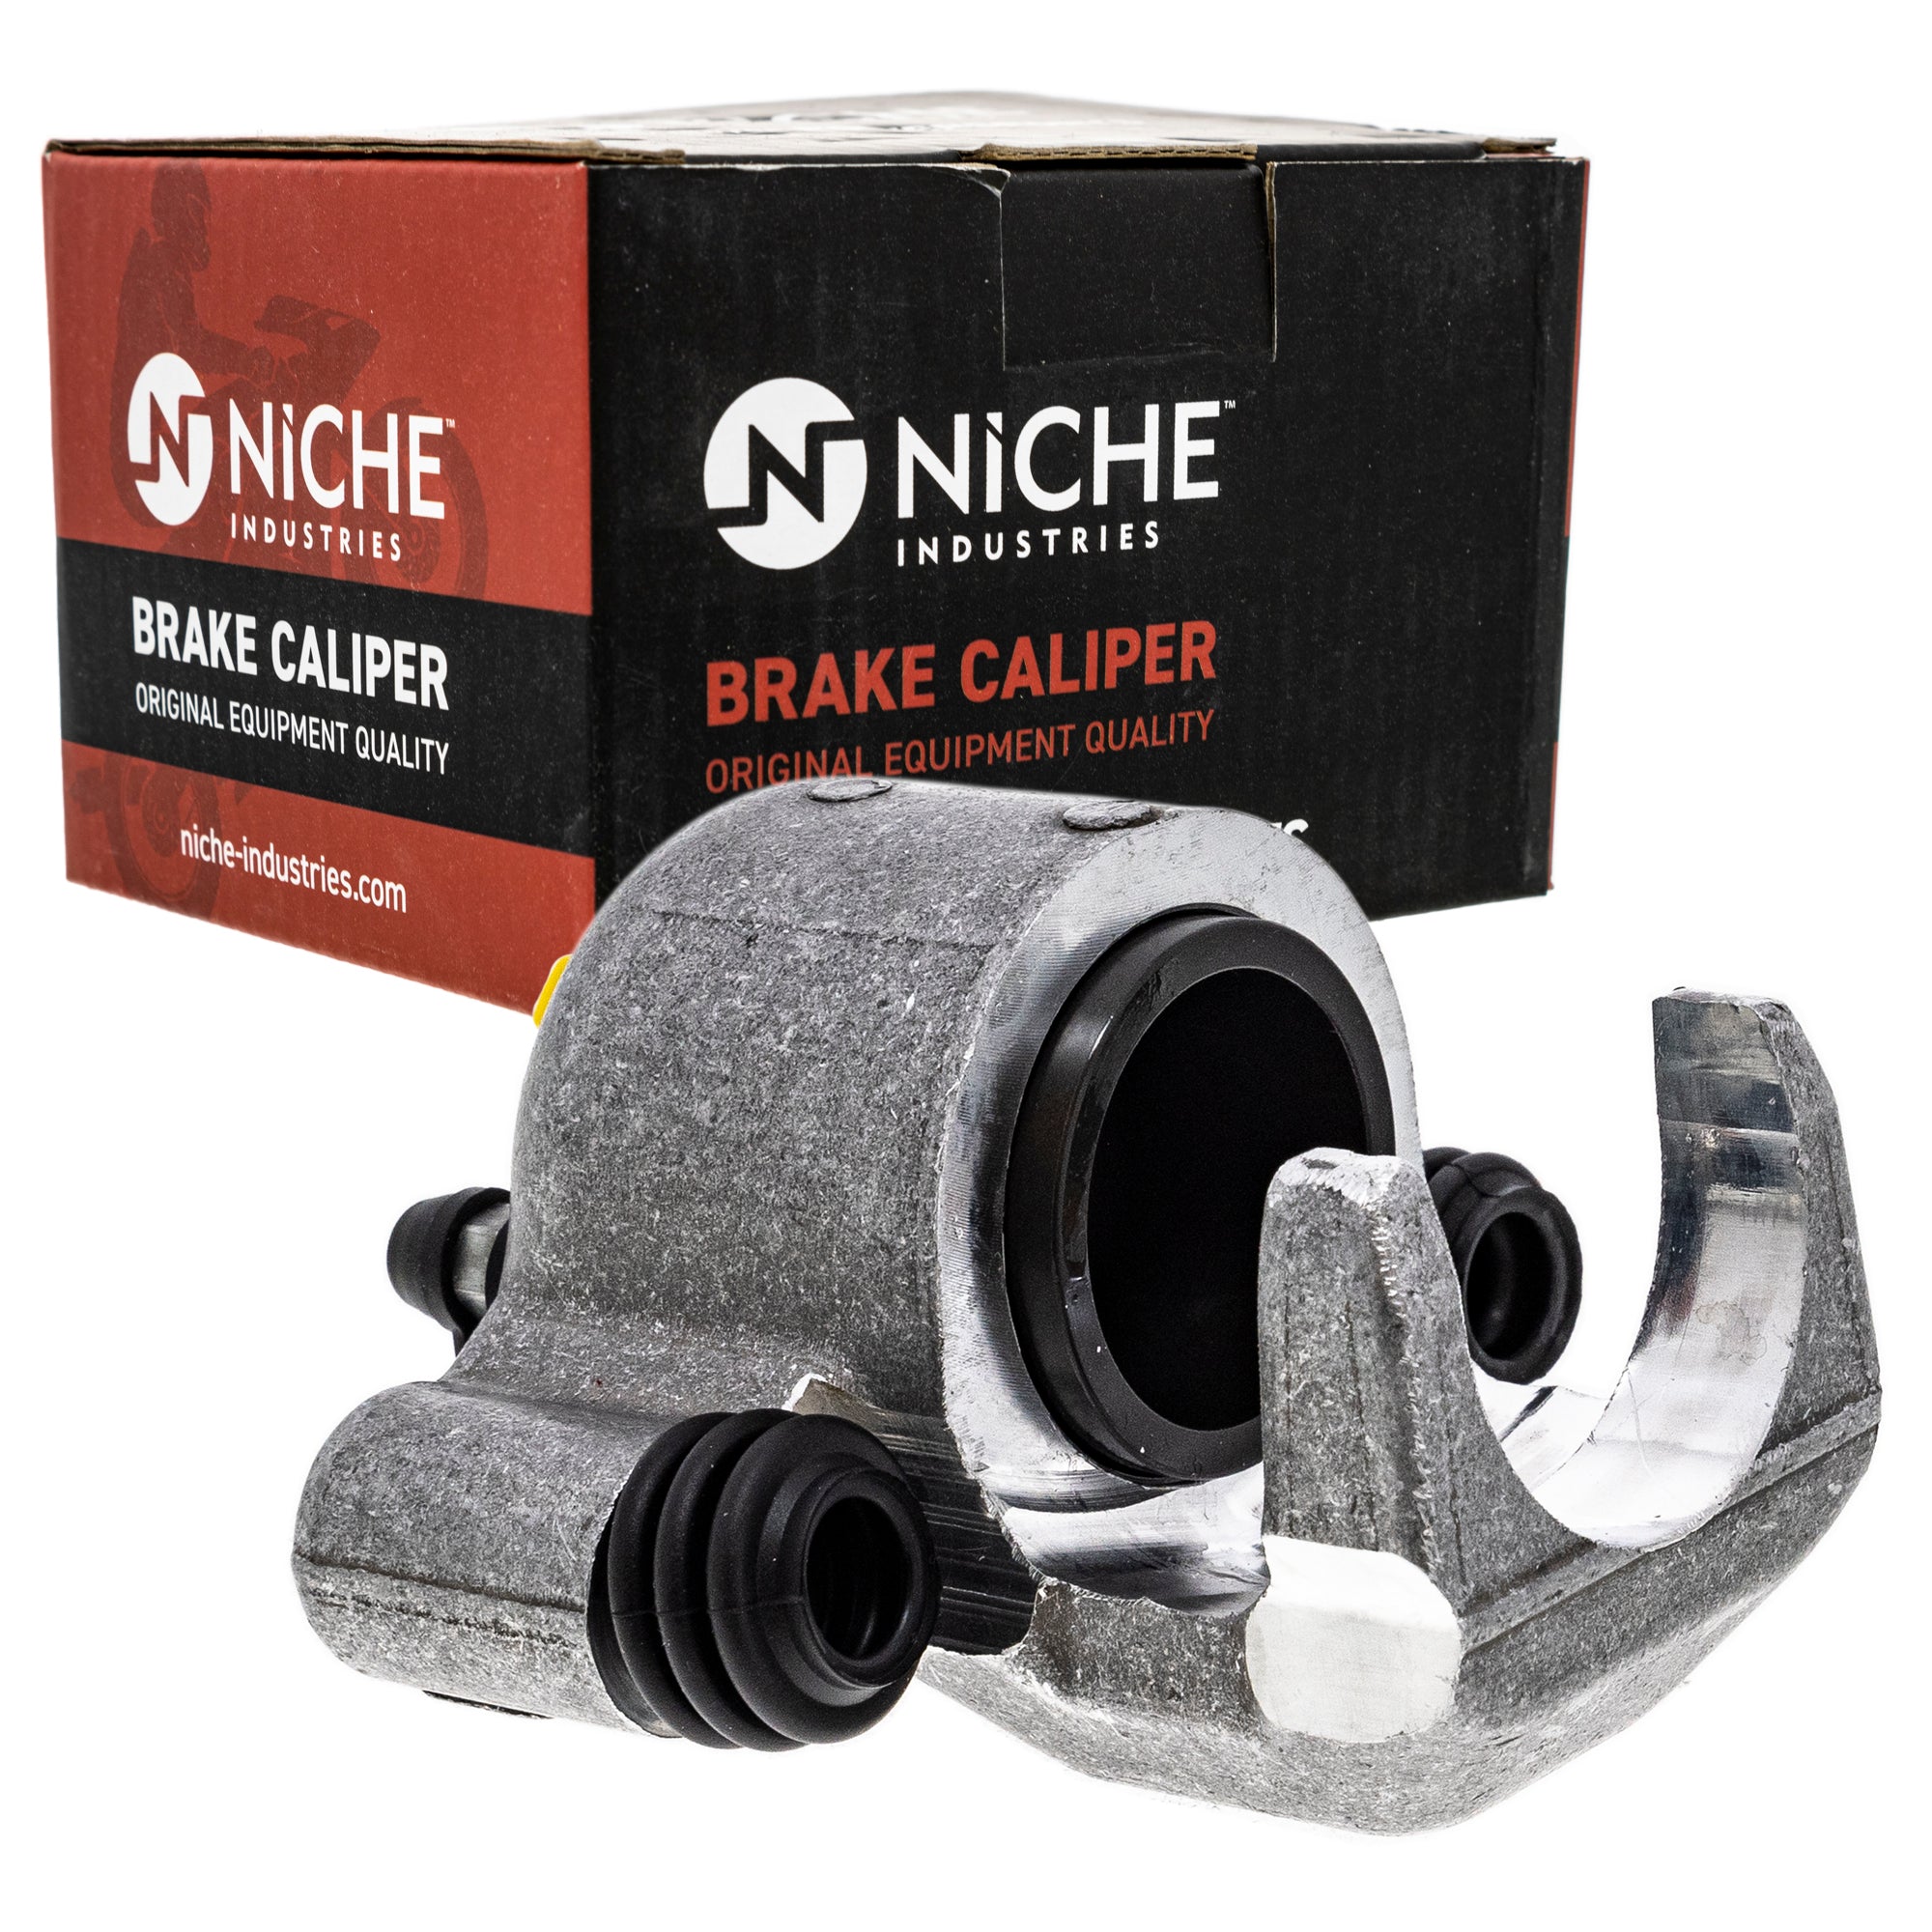 NICHE MK1001005 Brake Caliper Kit